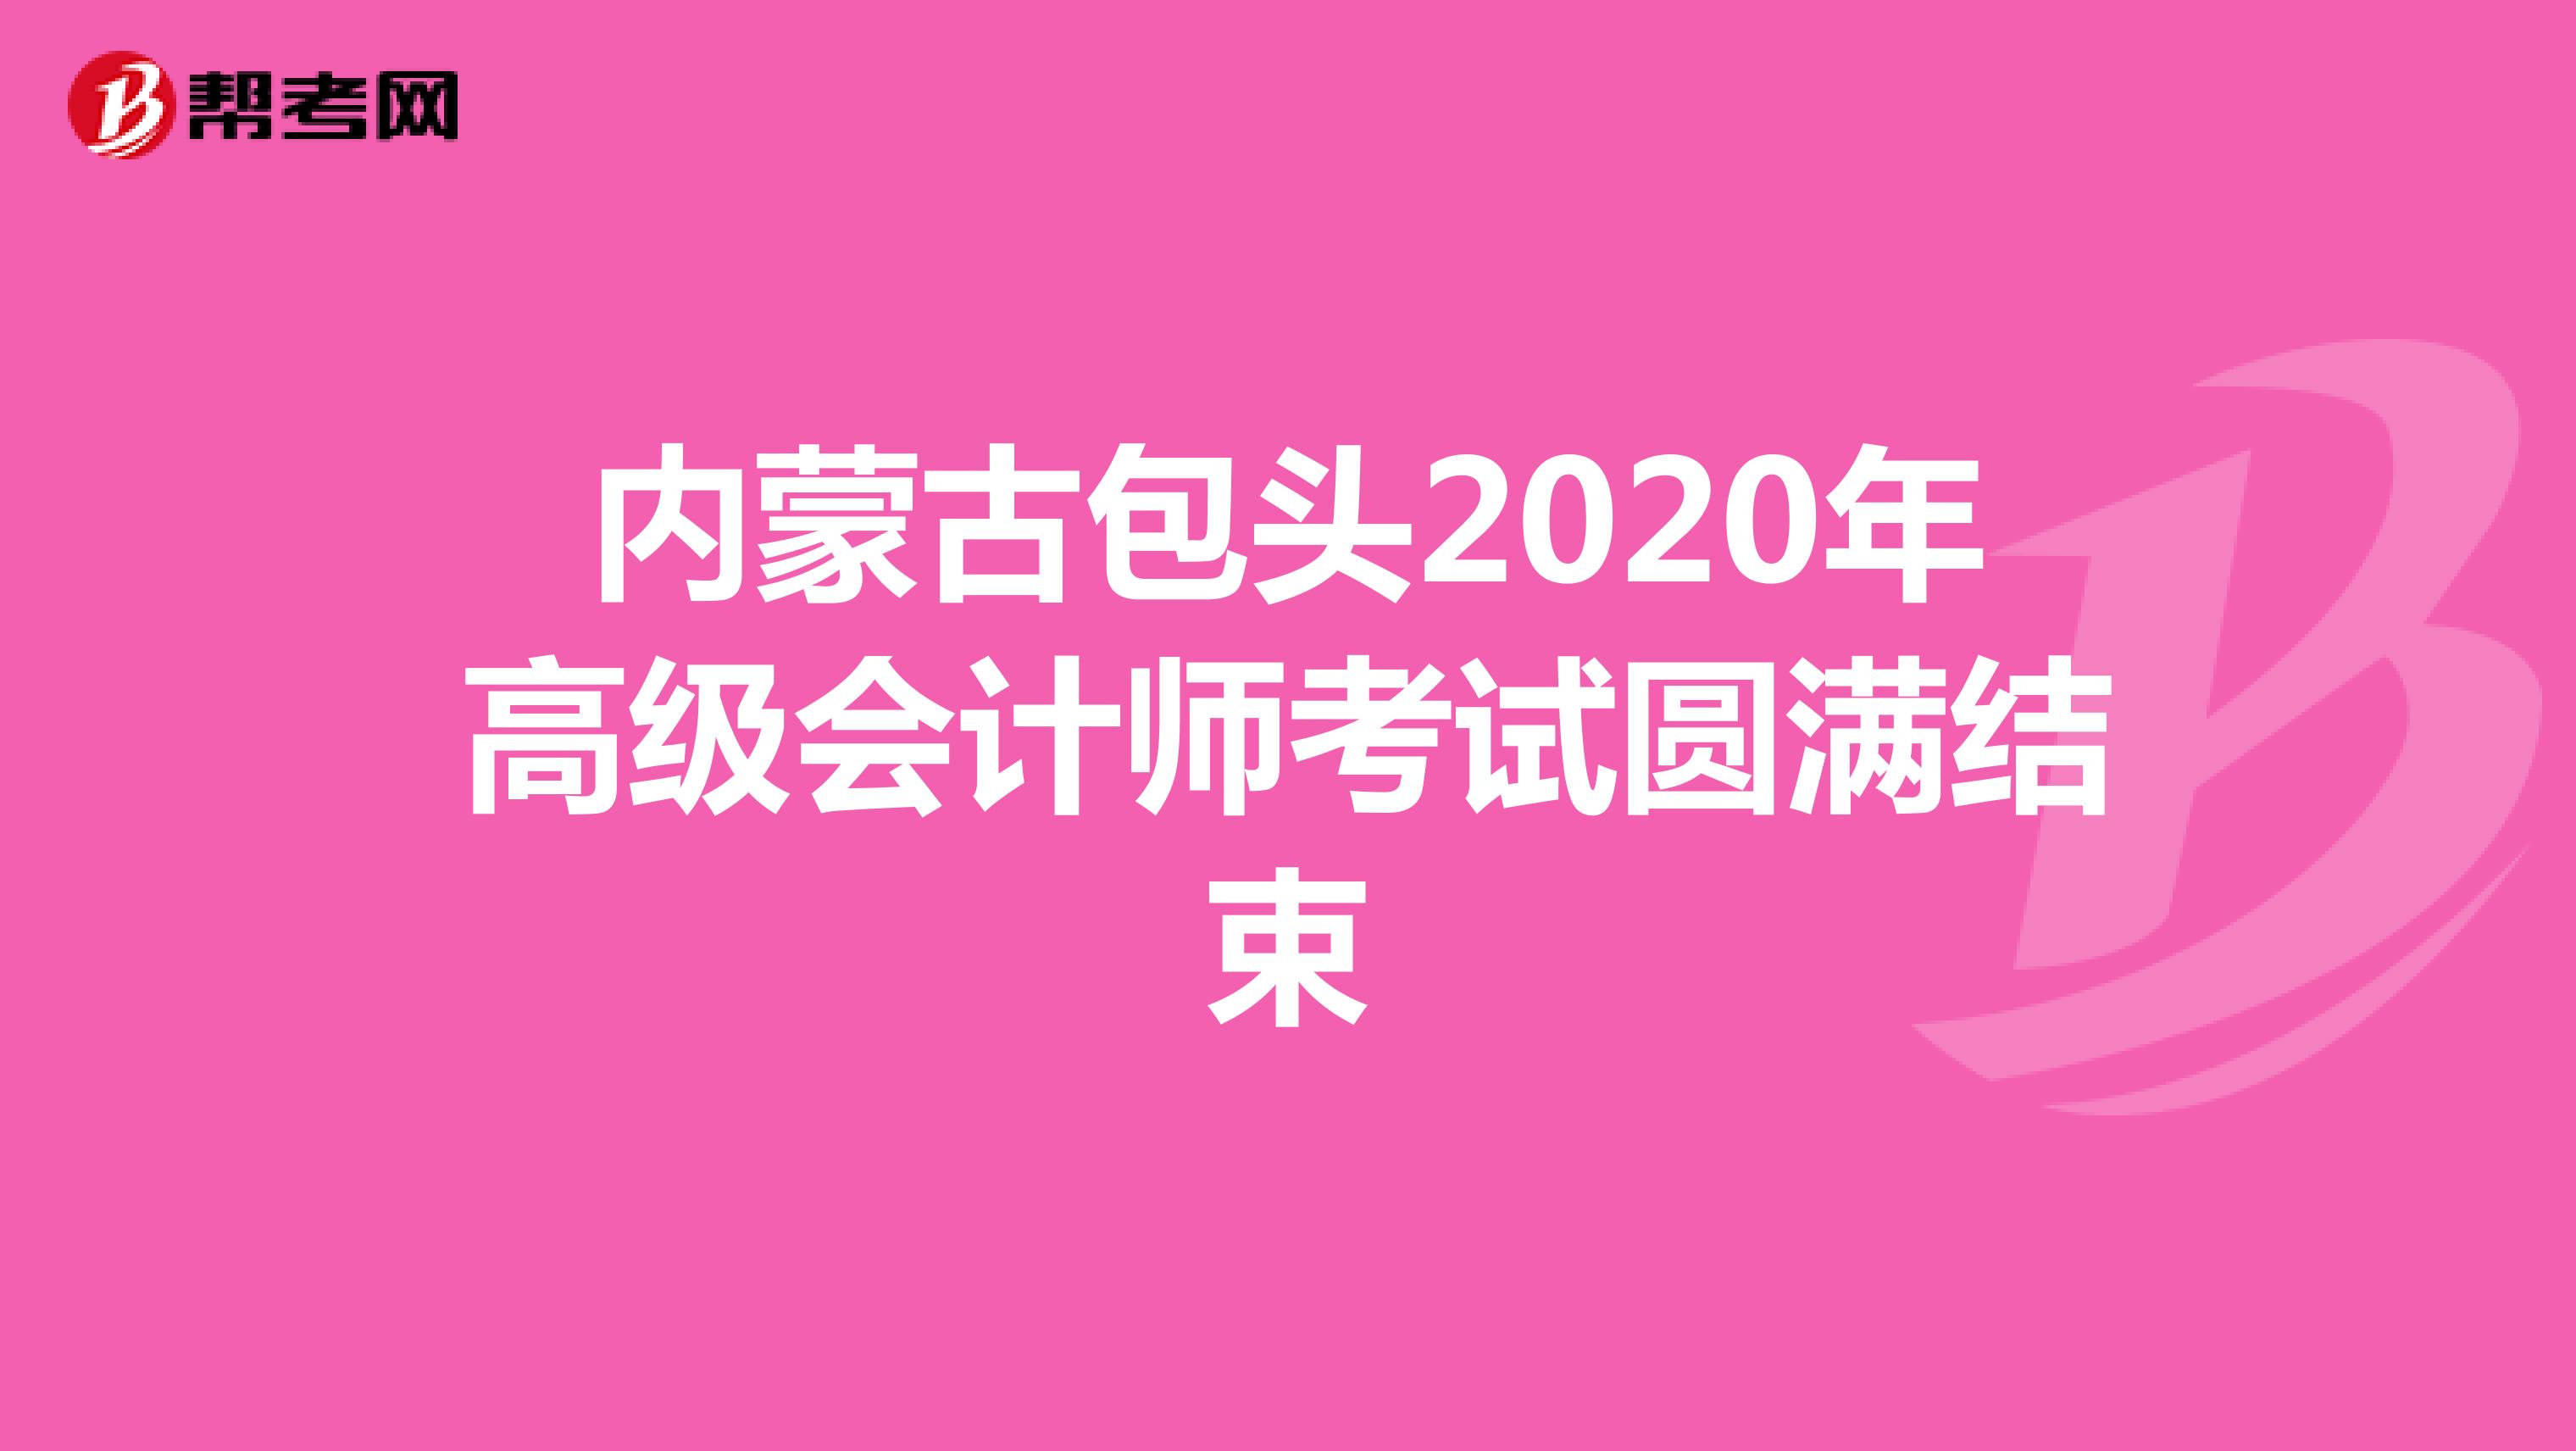 内蒙古包头2020年高级会计师考试圆满结束